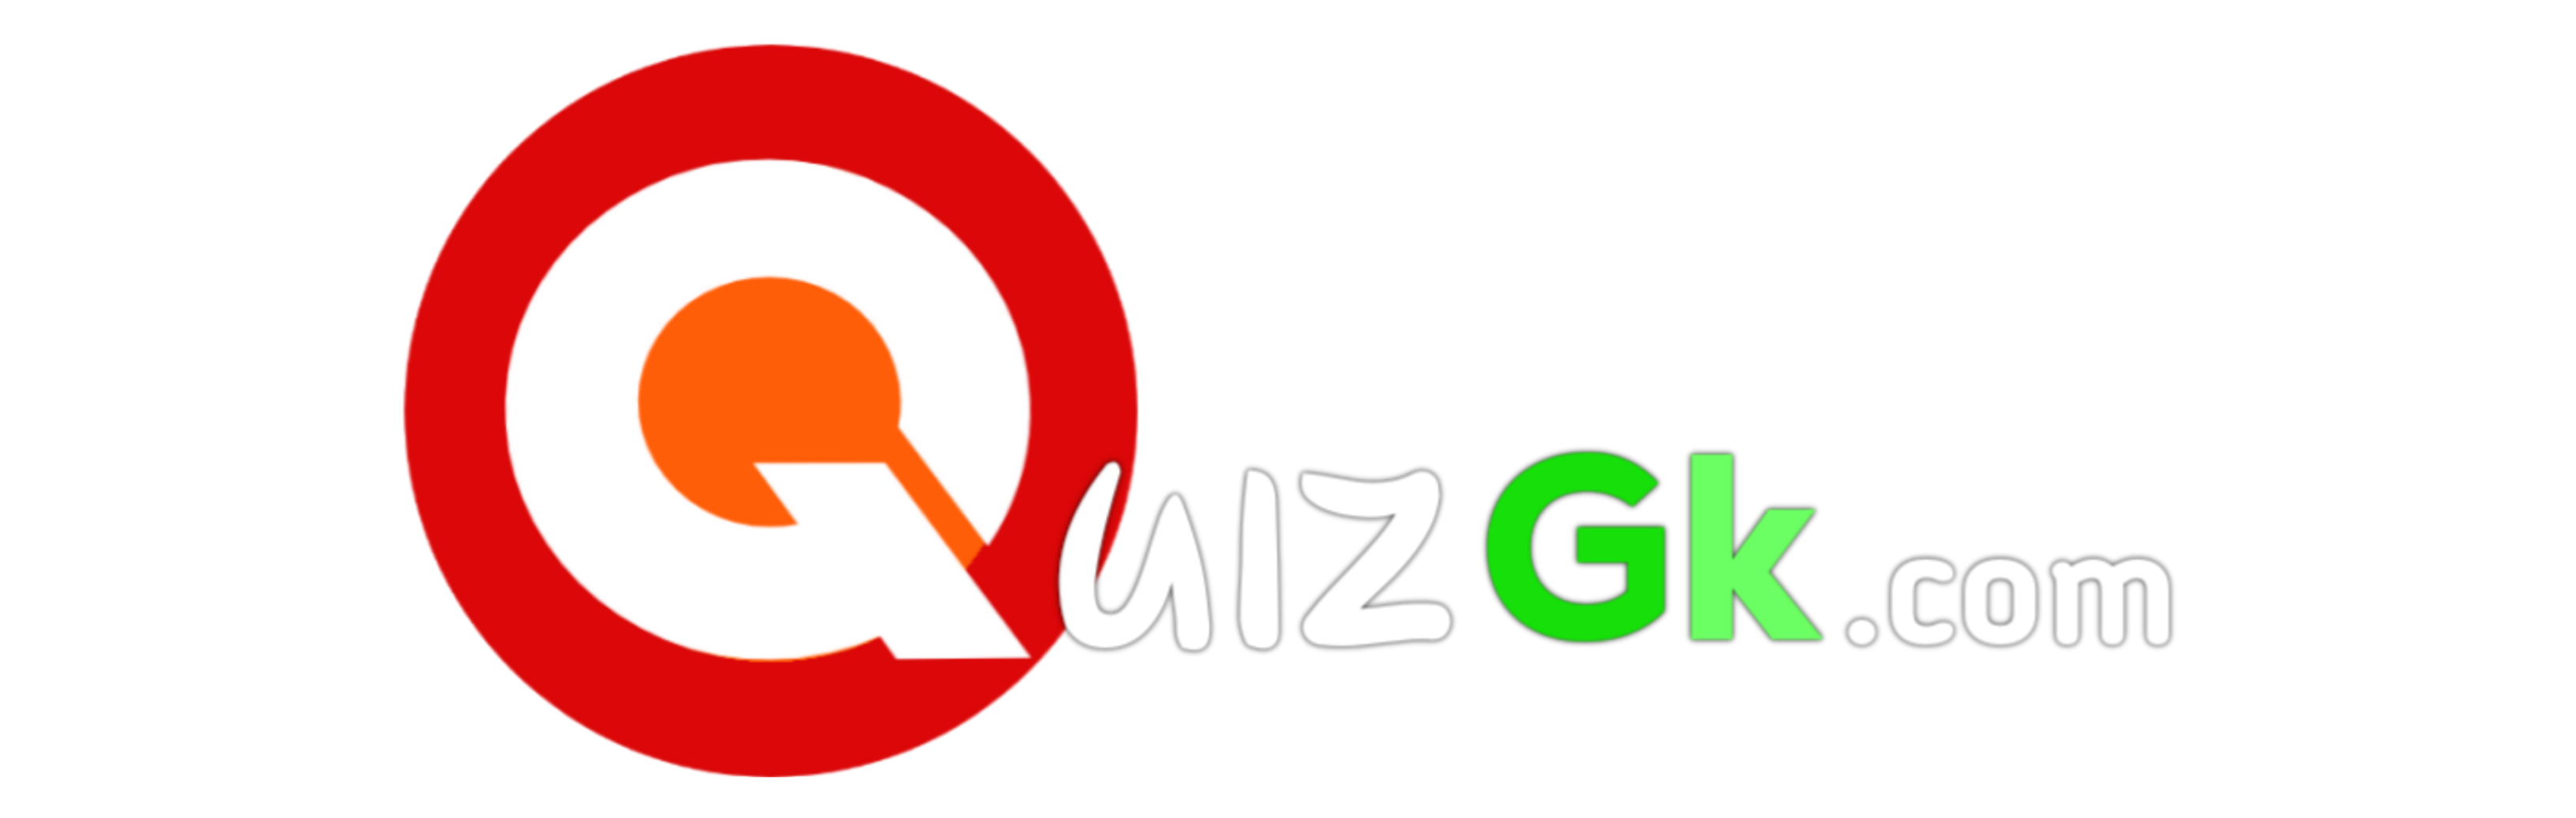 QuizGk